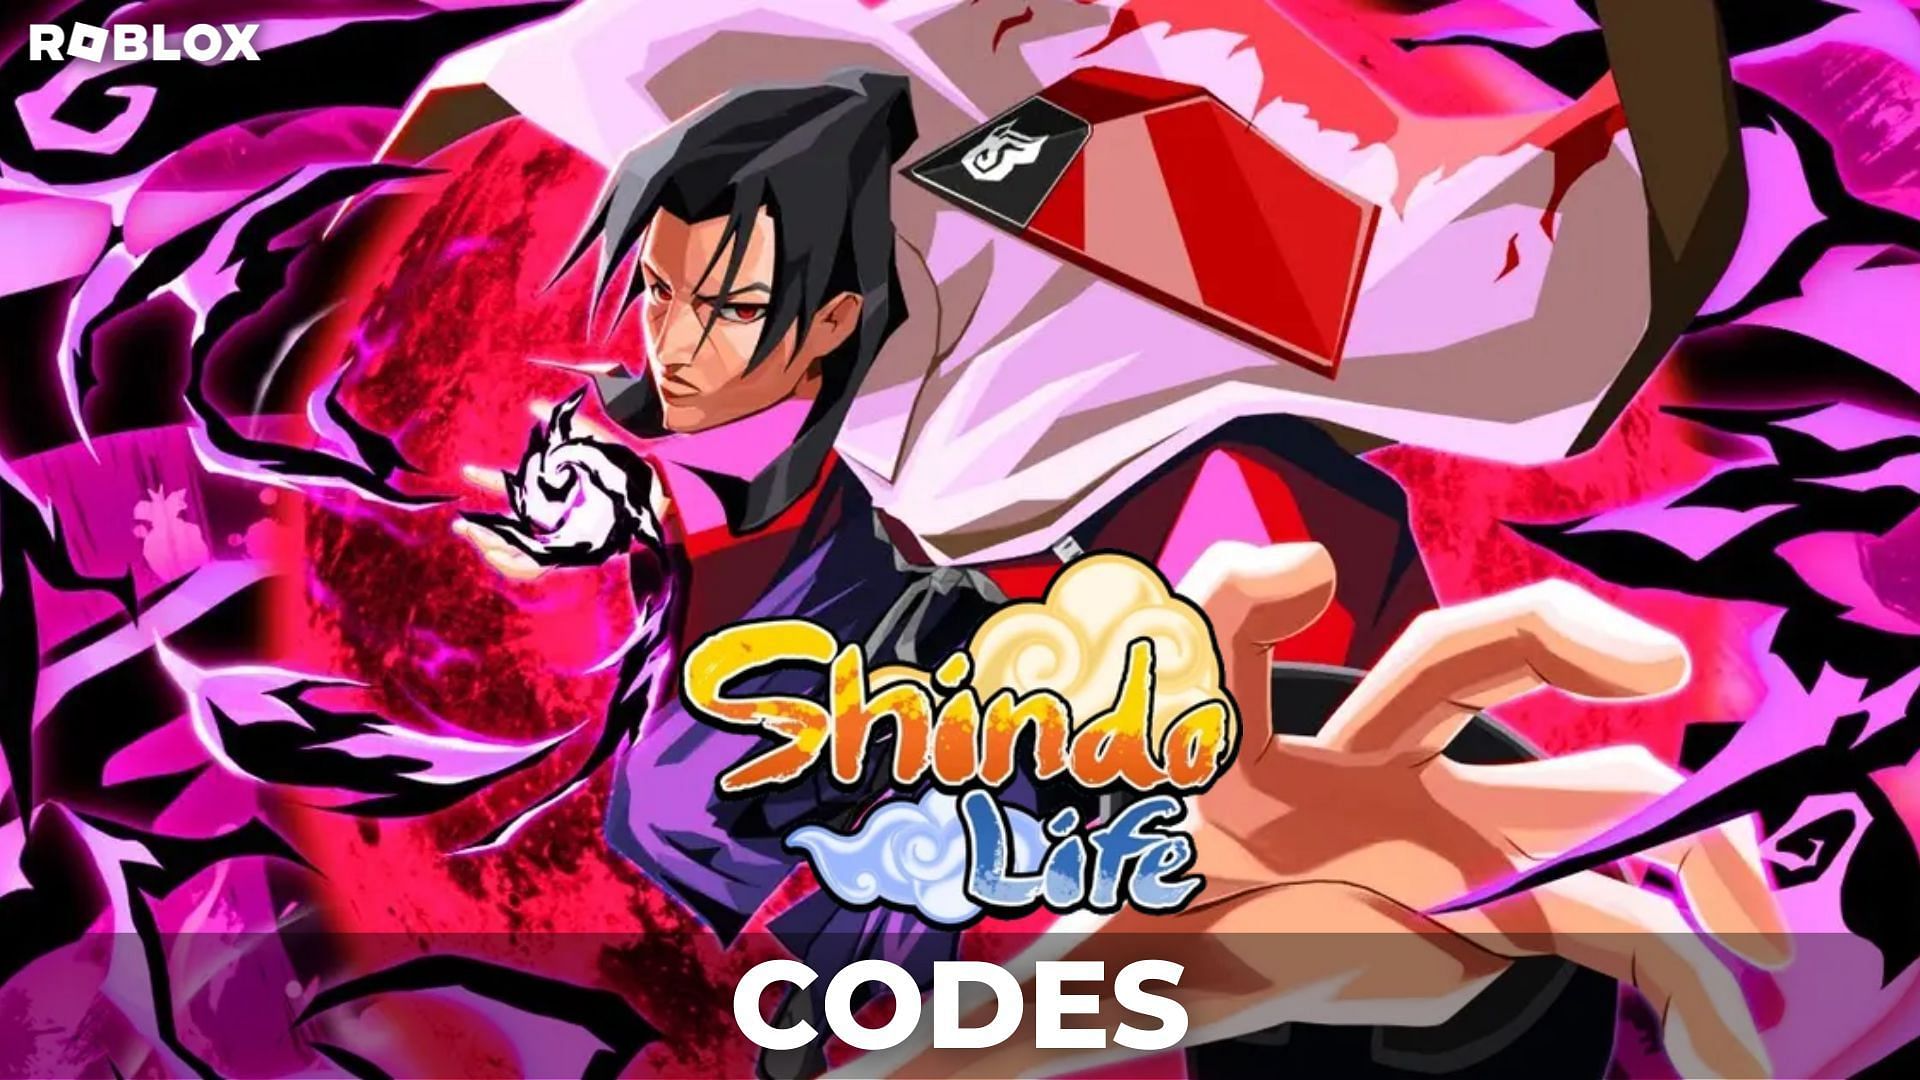 Shindo Life latest codes